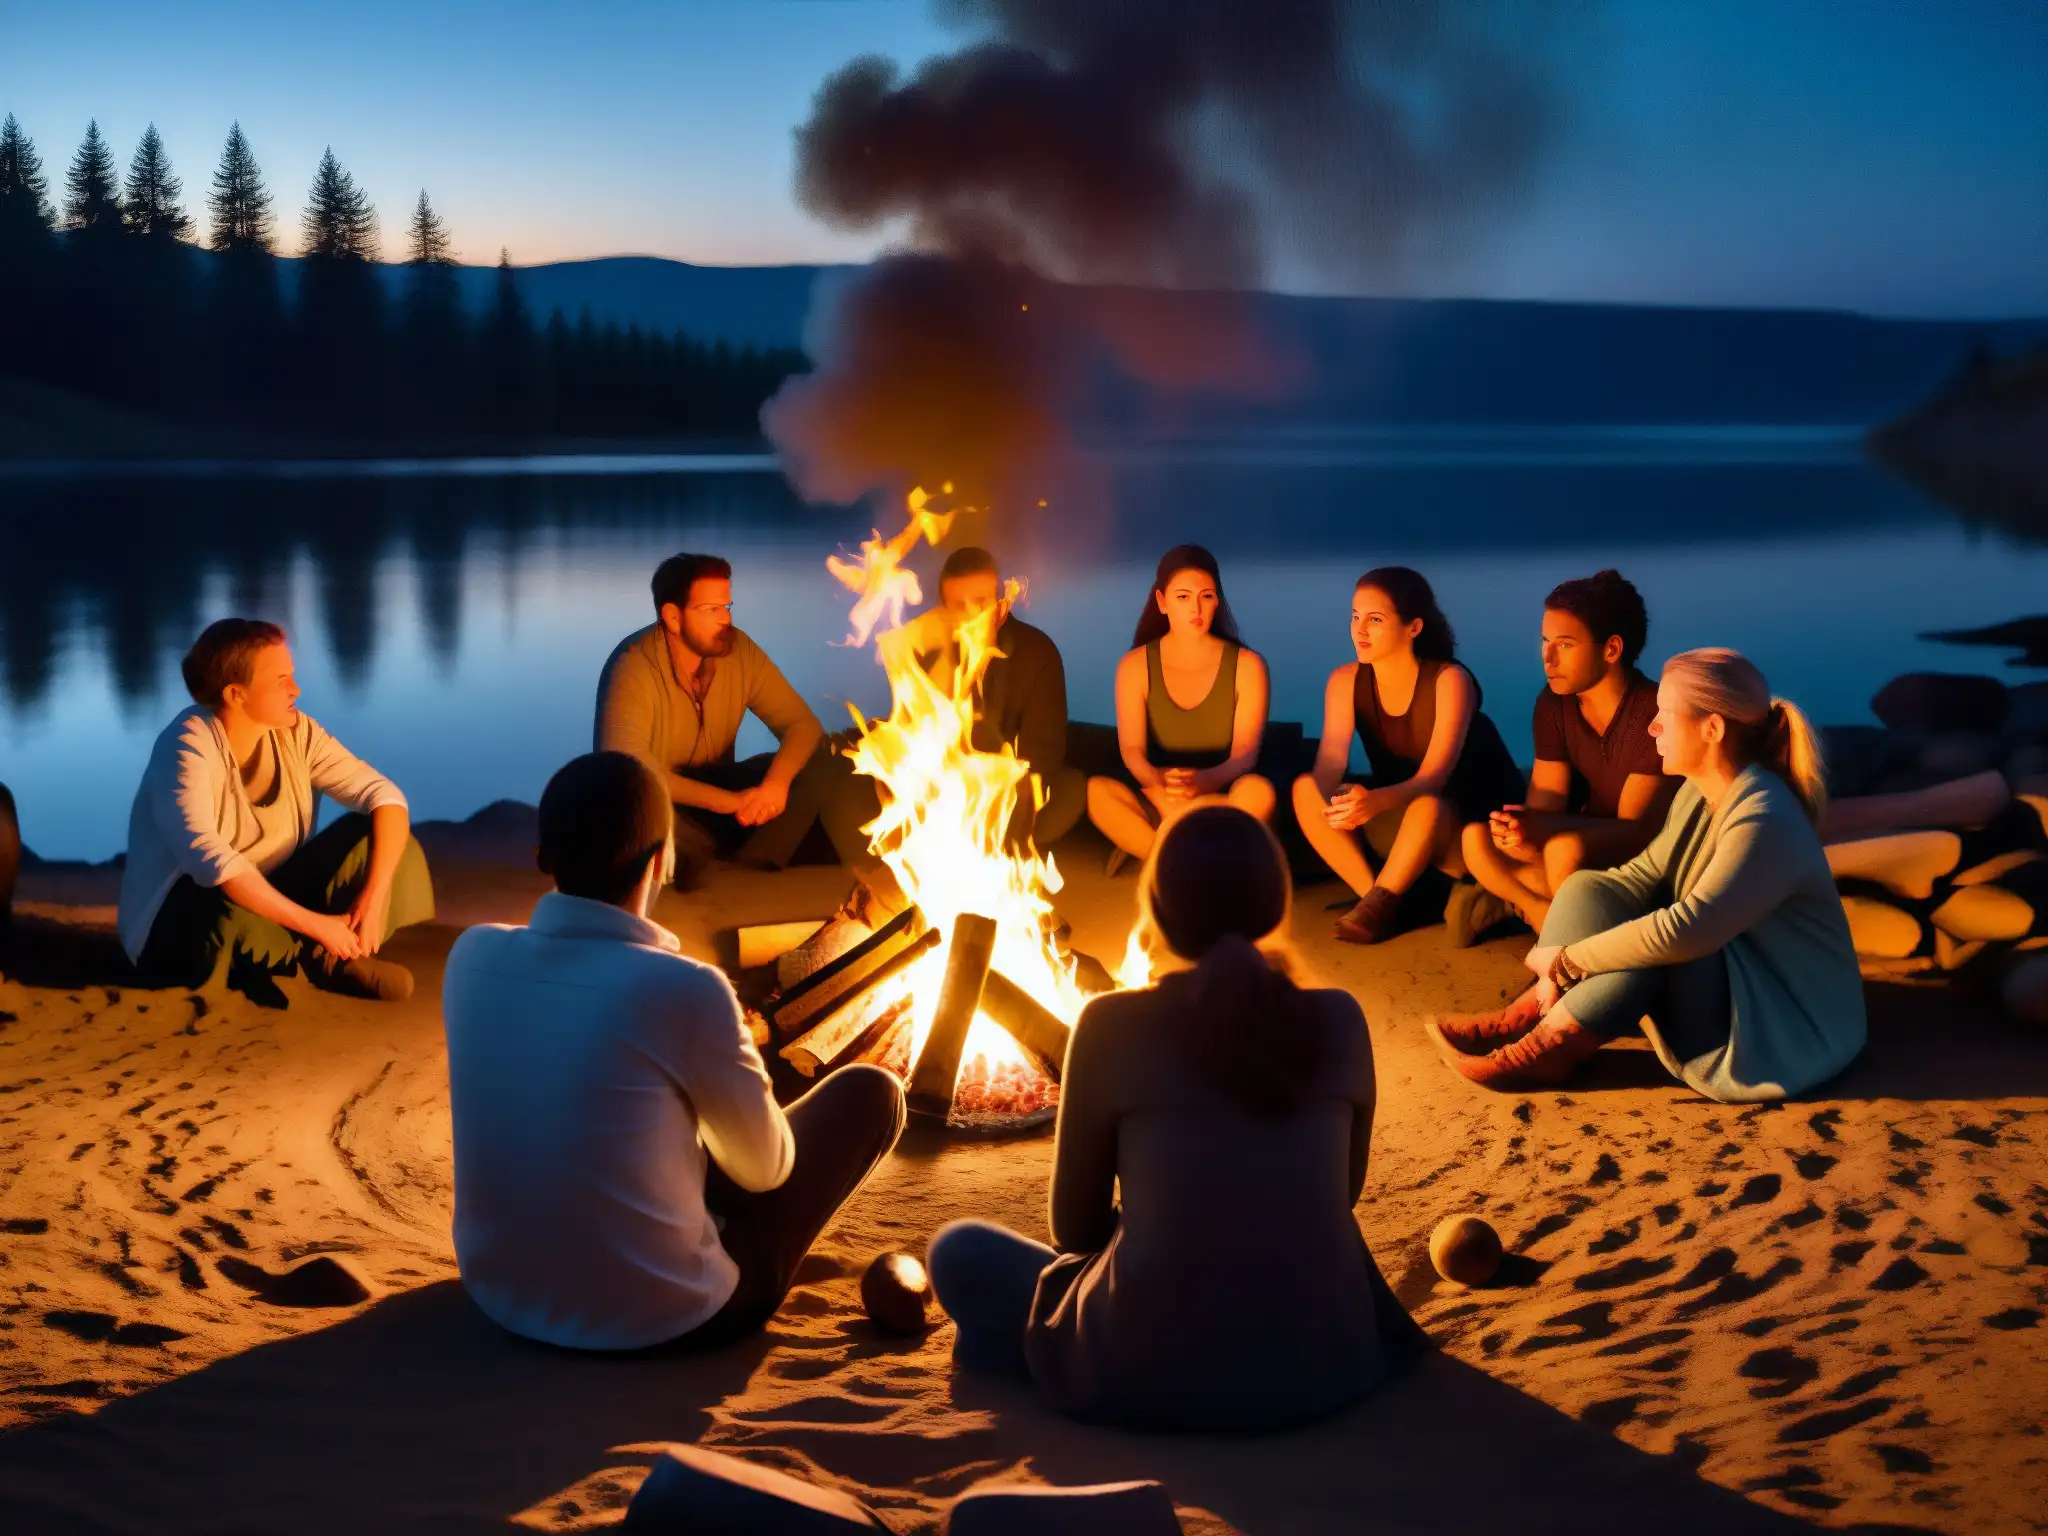 Un grupo escucha atentamente al narrador junto al fuego, creando una atmósfera misteriosa